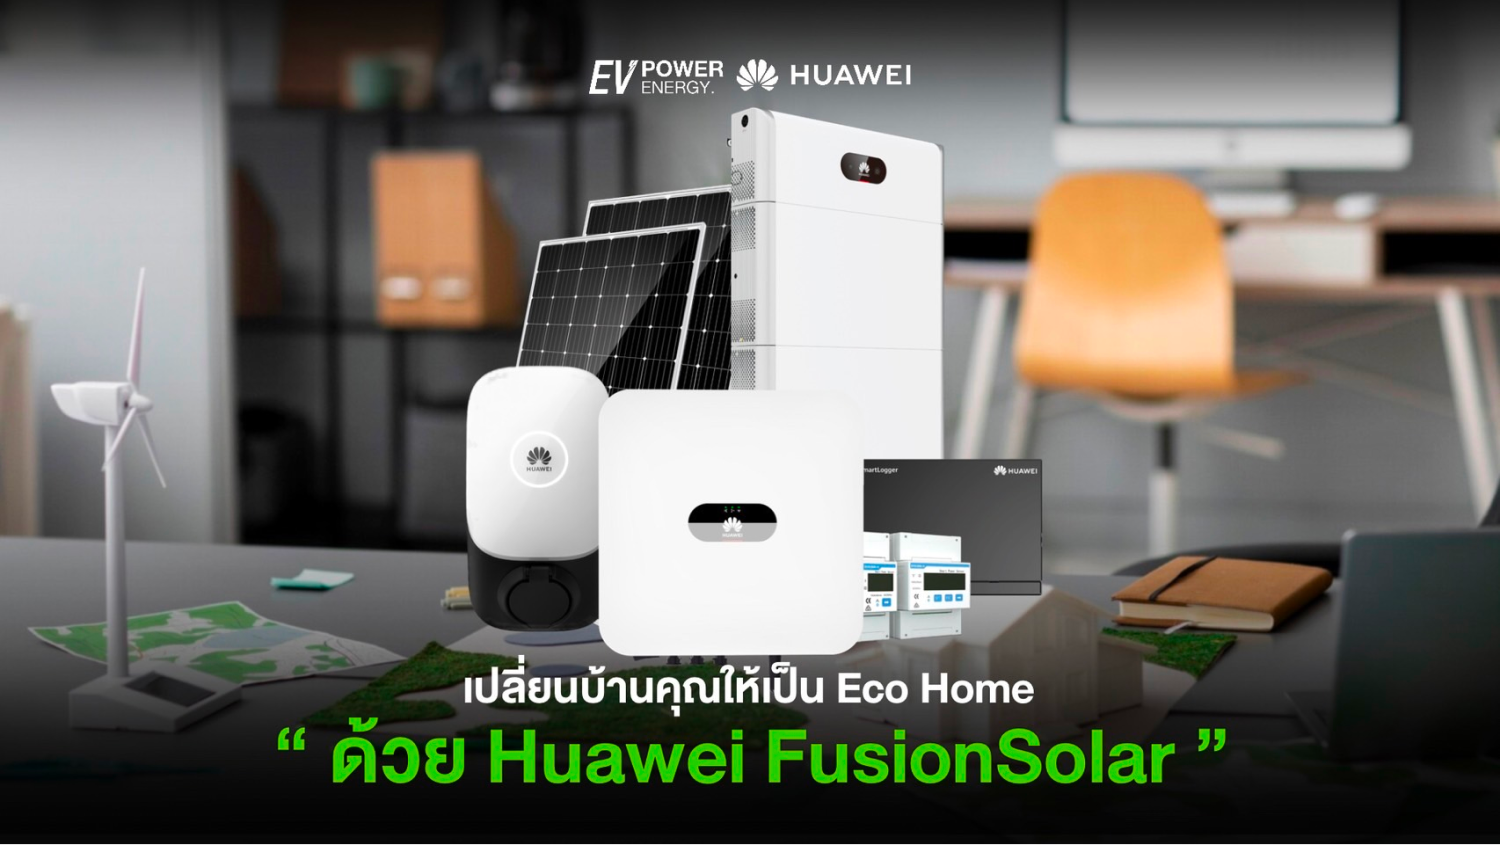 เปลี่ยนบ้านคุณให้เป็น Eco Home ด้วย Huawei FusionSolar